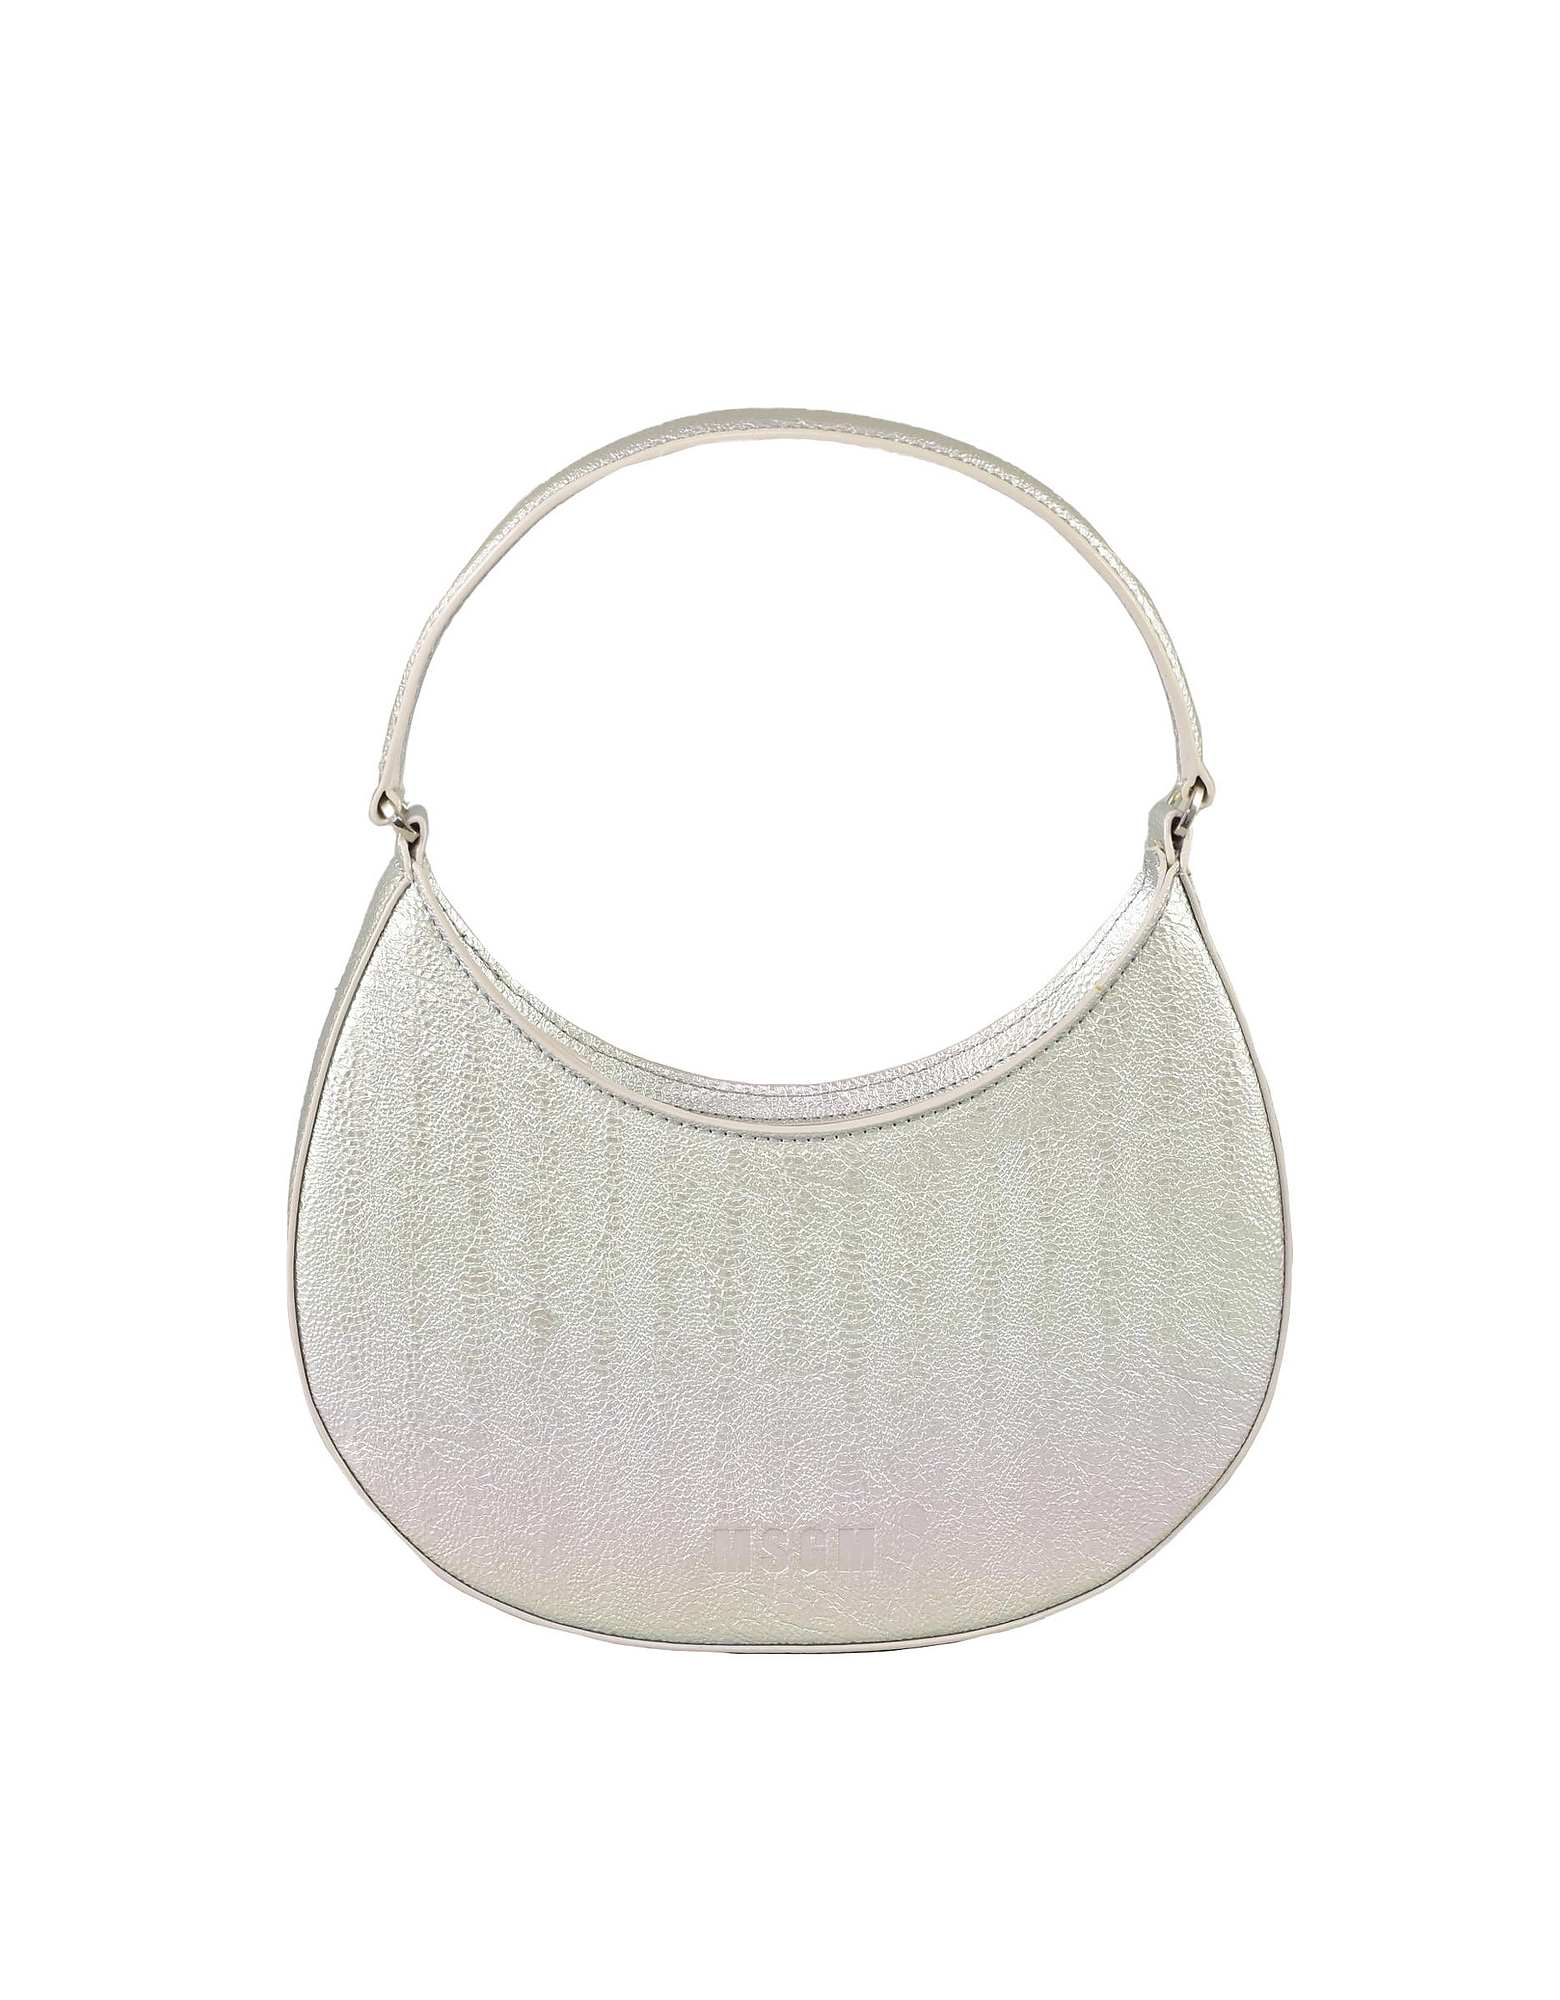 Msgm Designer Handbags Women's Silver Handbag